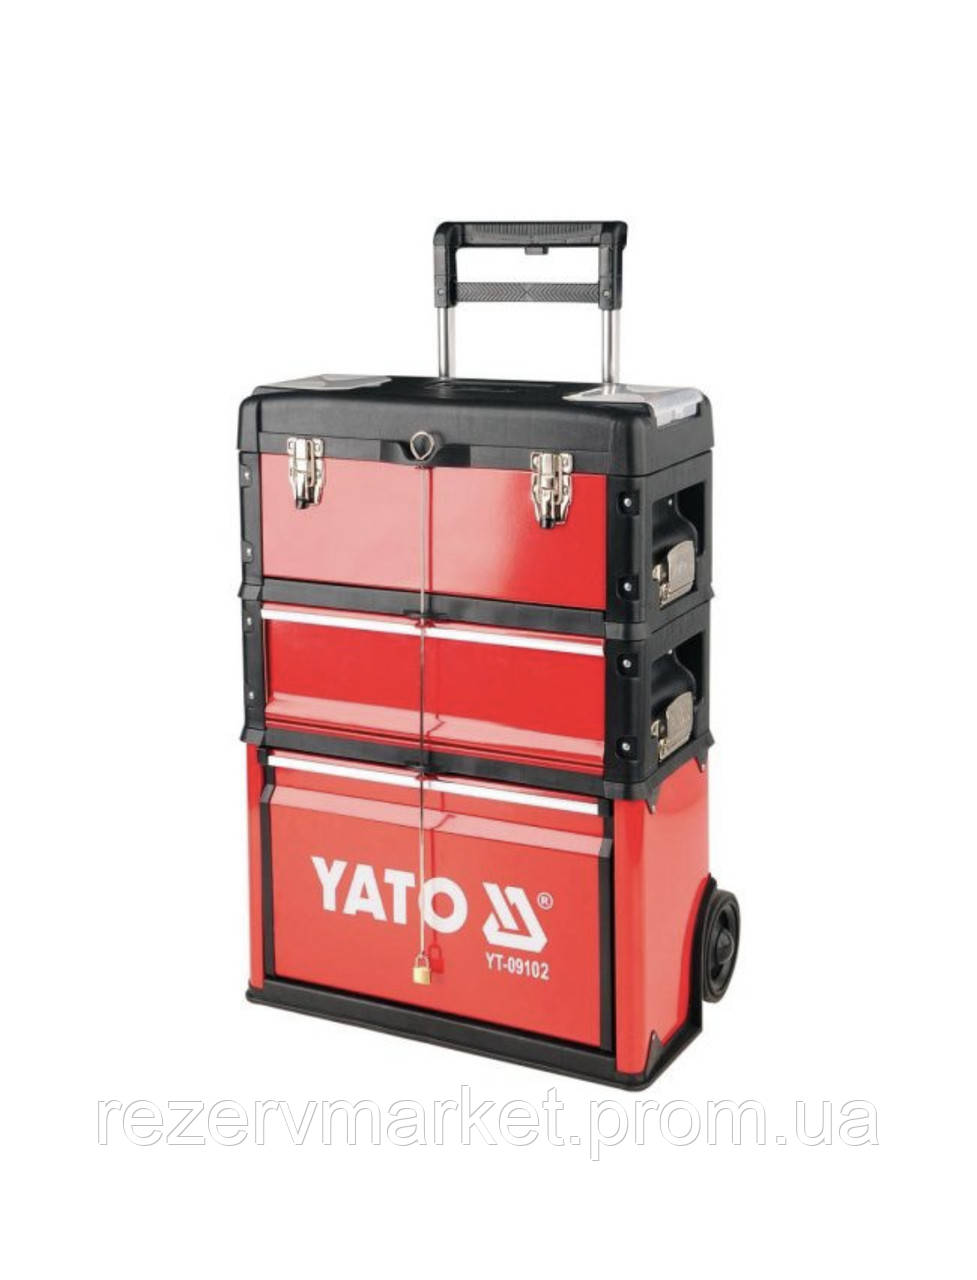 Ящик-візок, для СТО, валіза, Yato YT-09102 3 шт для інструментів